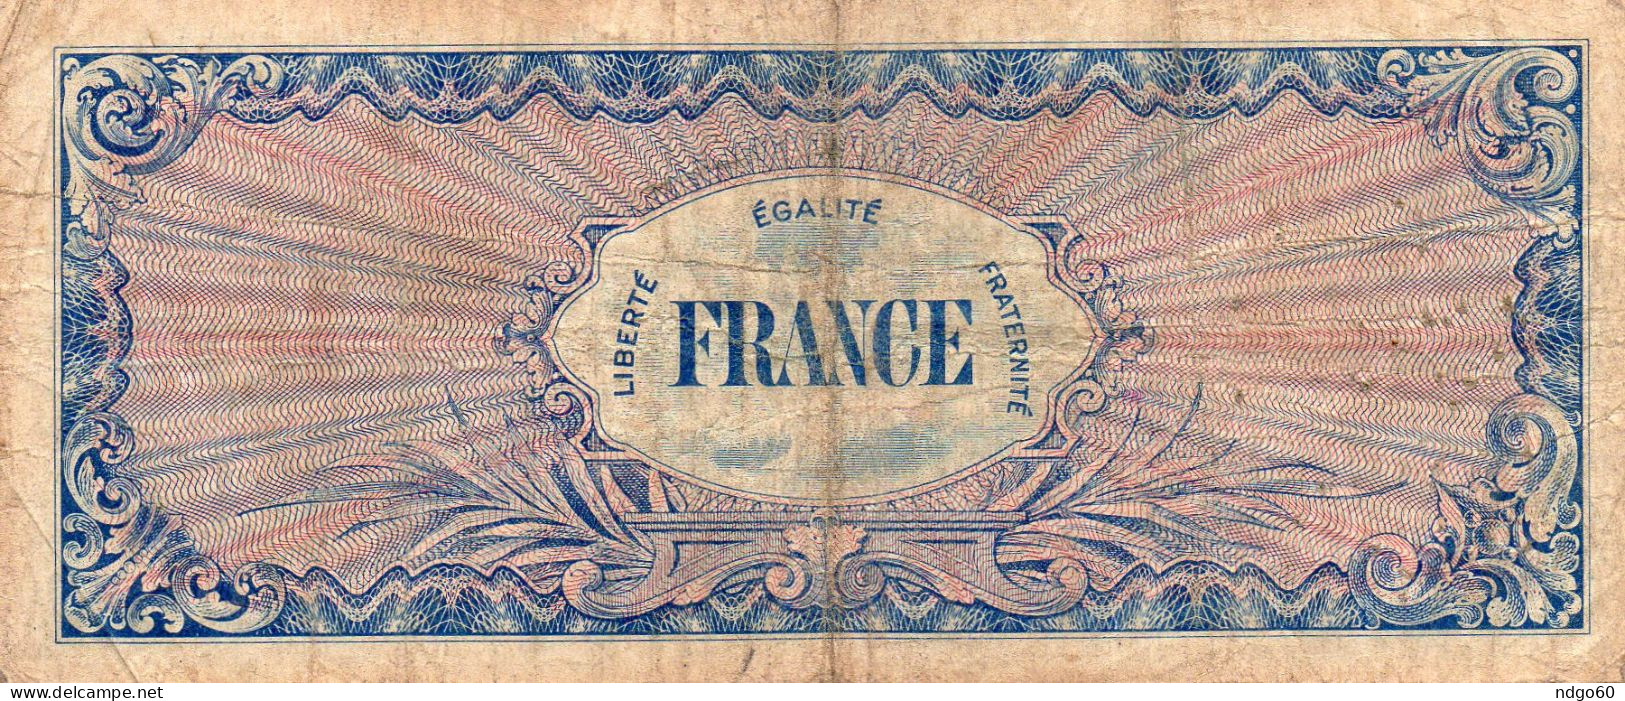 Billet 100  Fr Du Trésor " Verso France " - 1945 Verso Francés